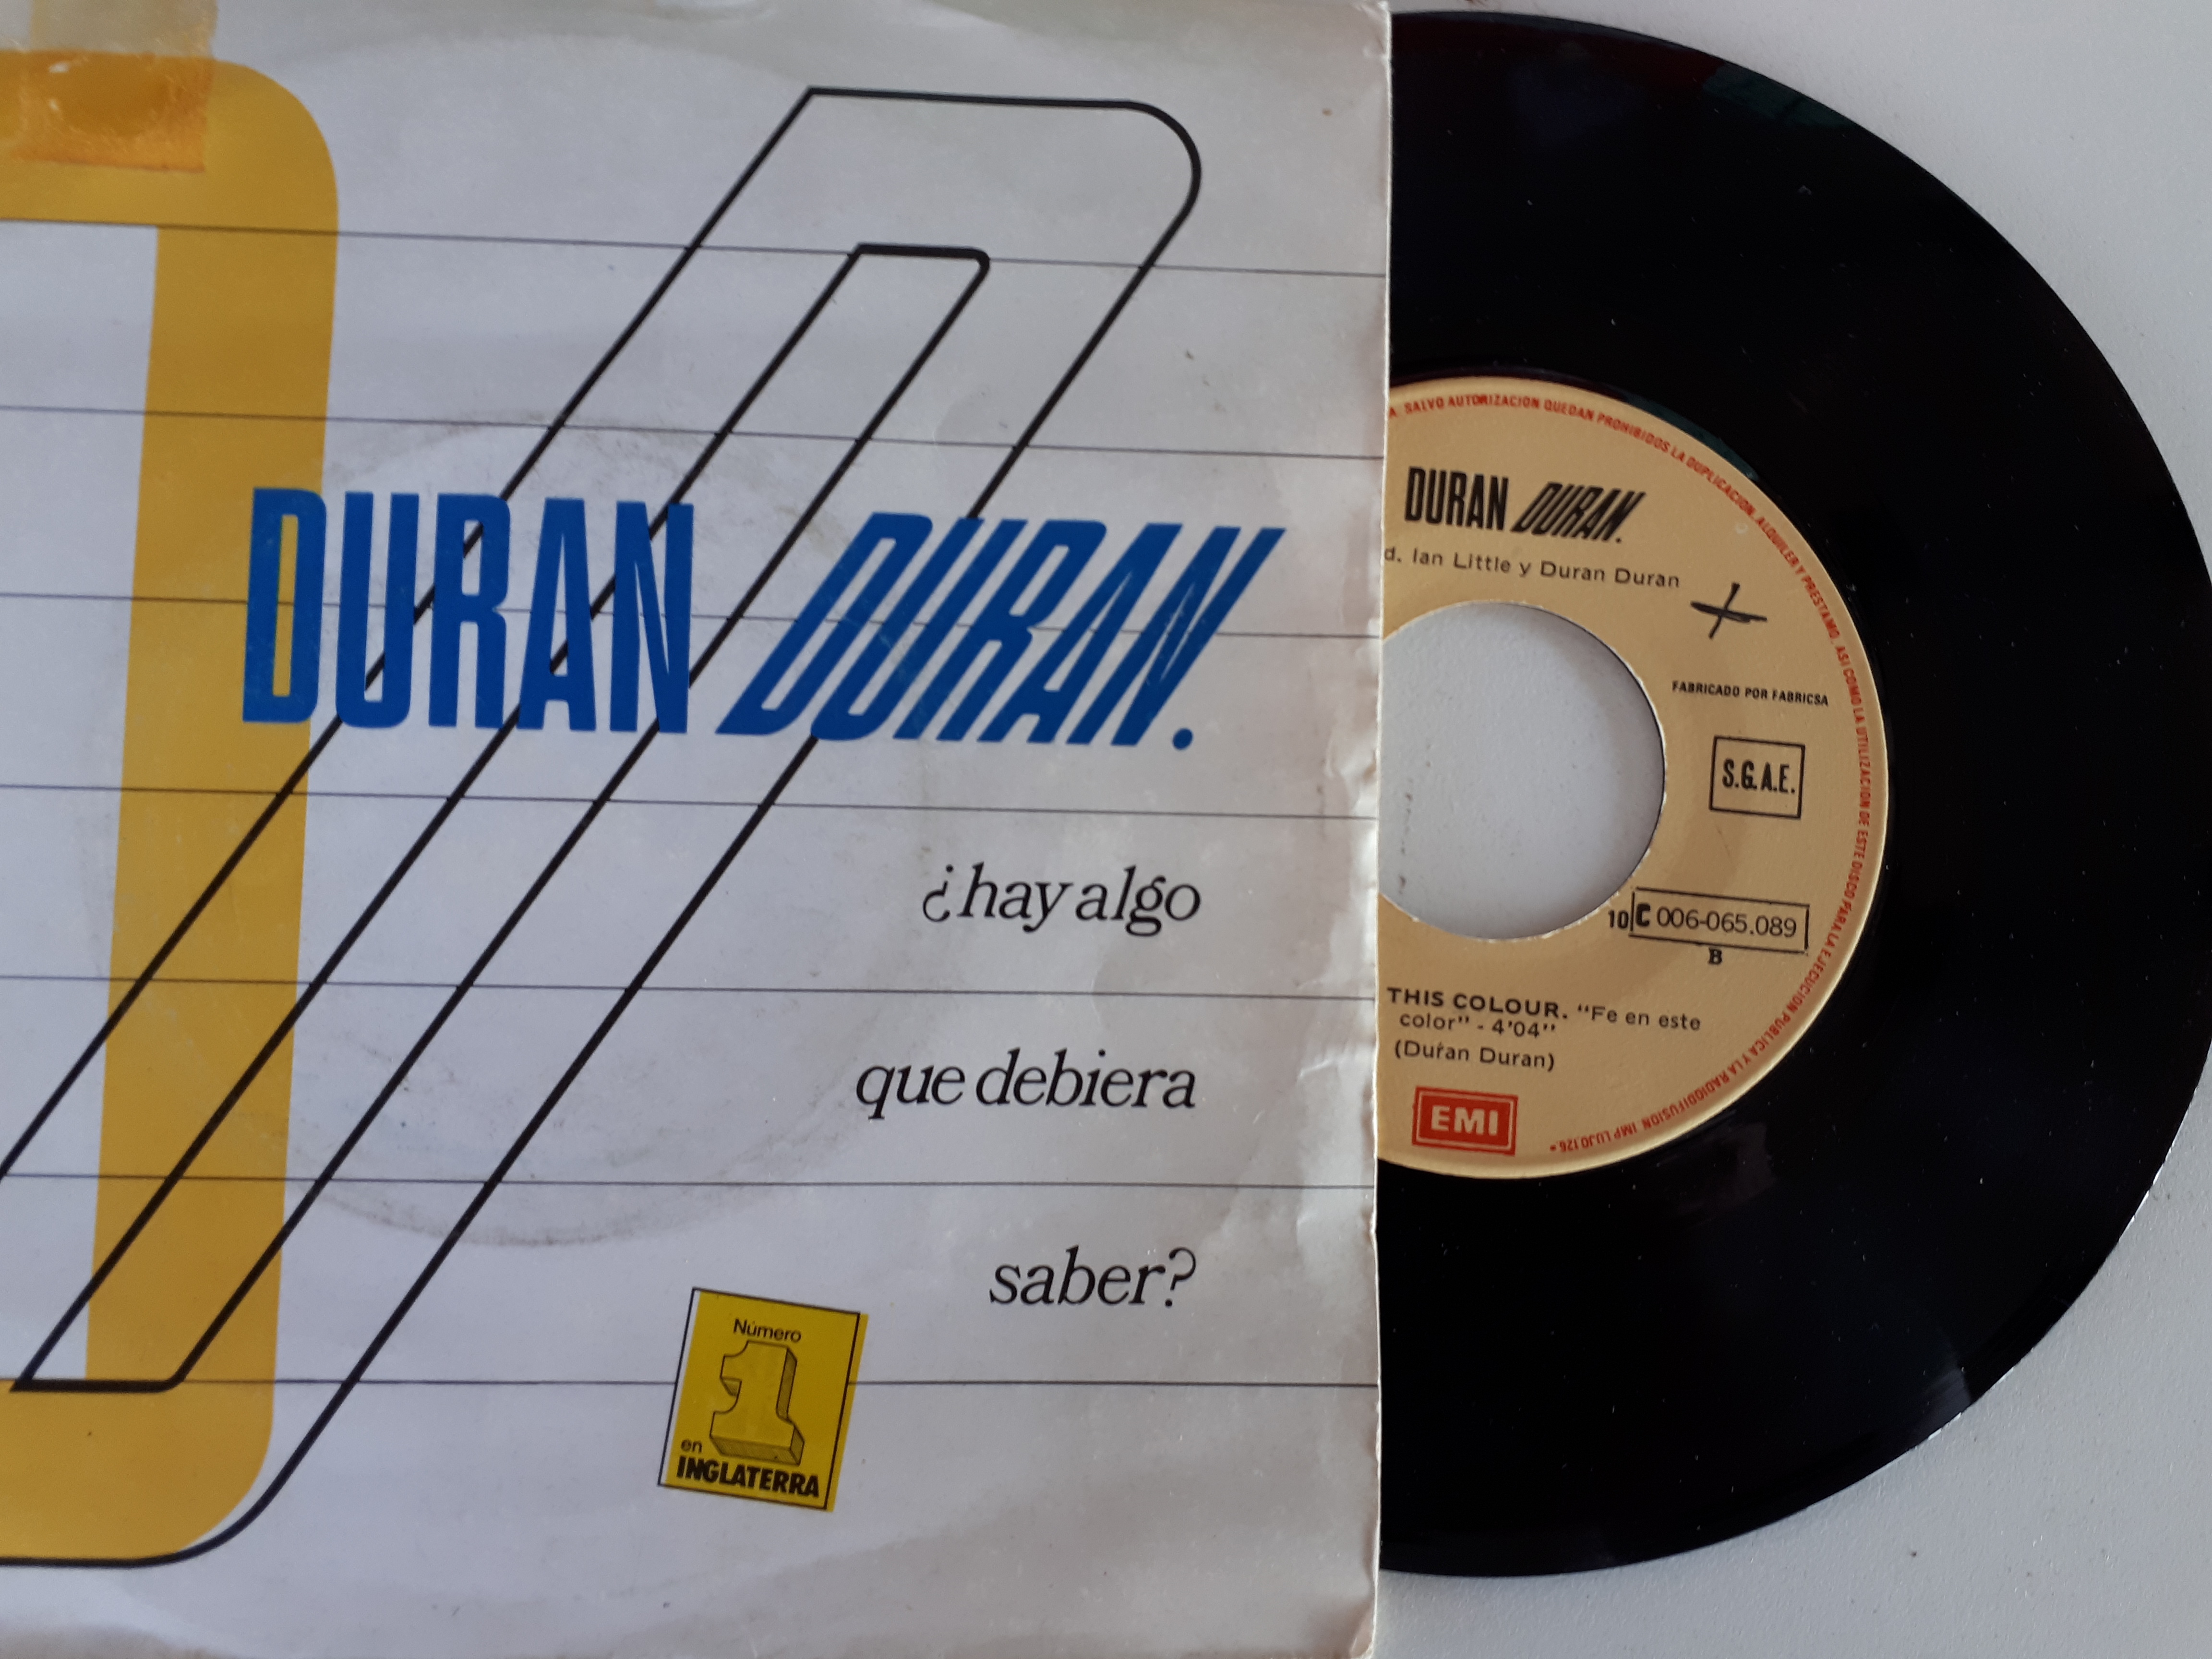 Duran Duran - ¿Hay Algo Que Debiera Saber? / is there something i should know (Promo)